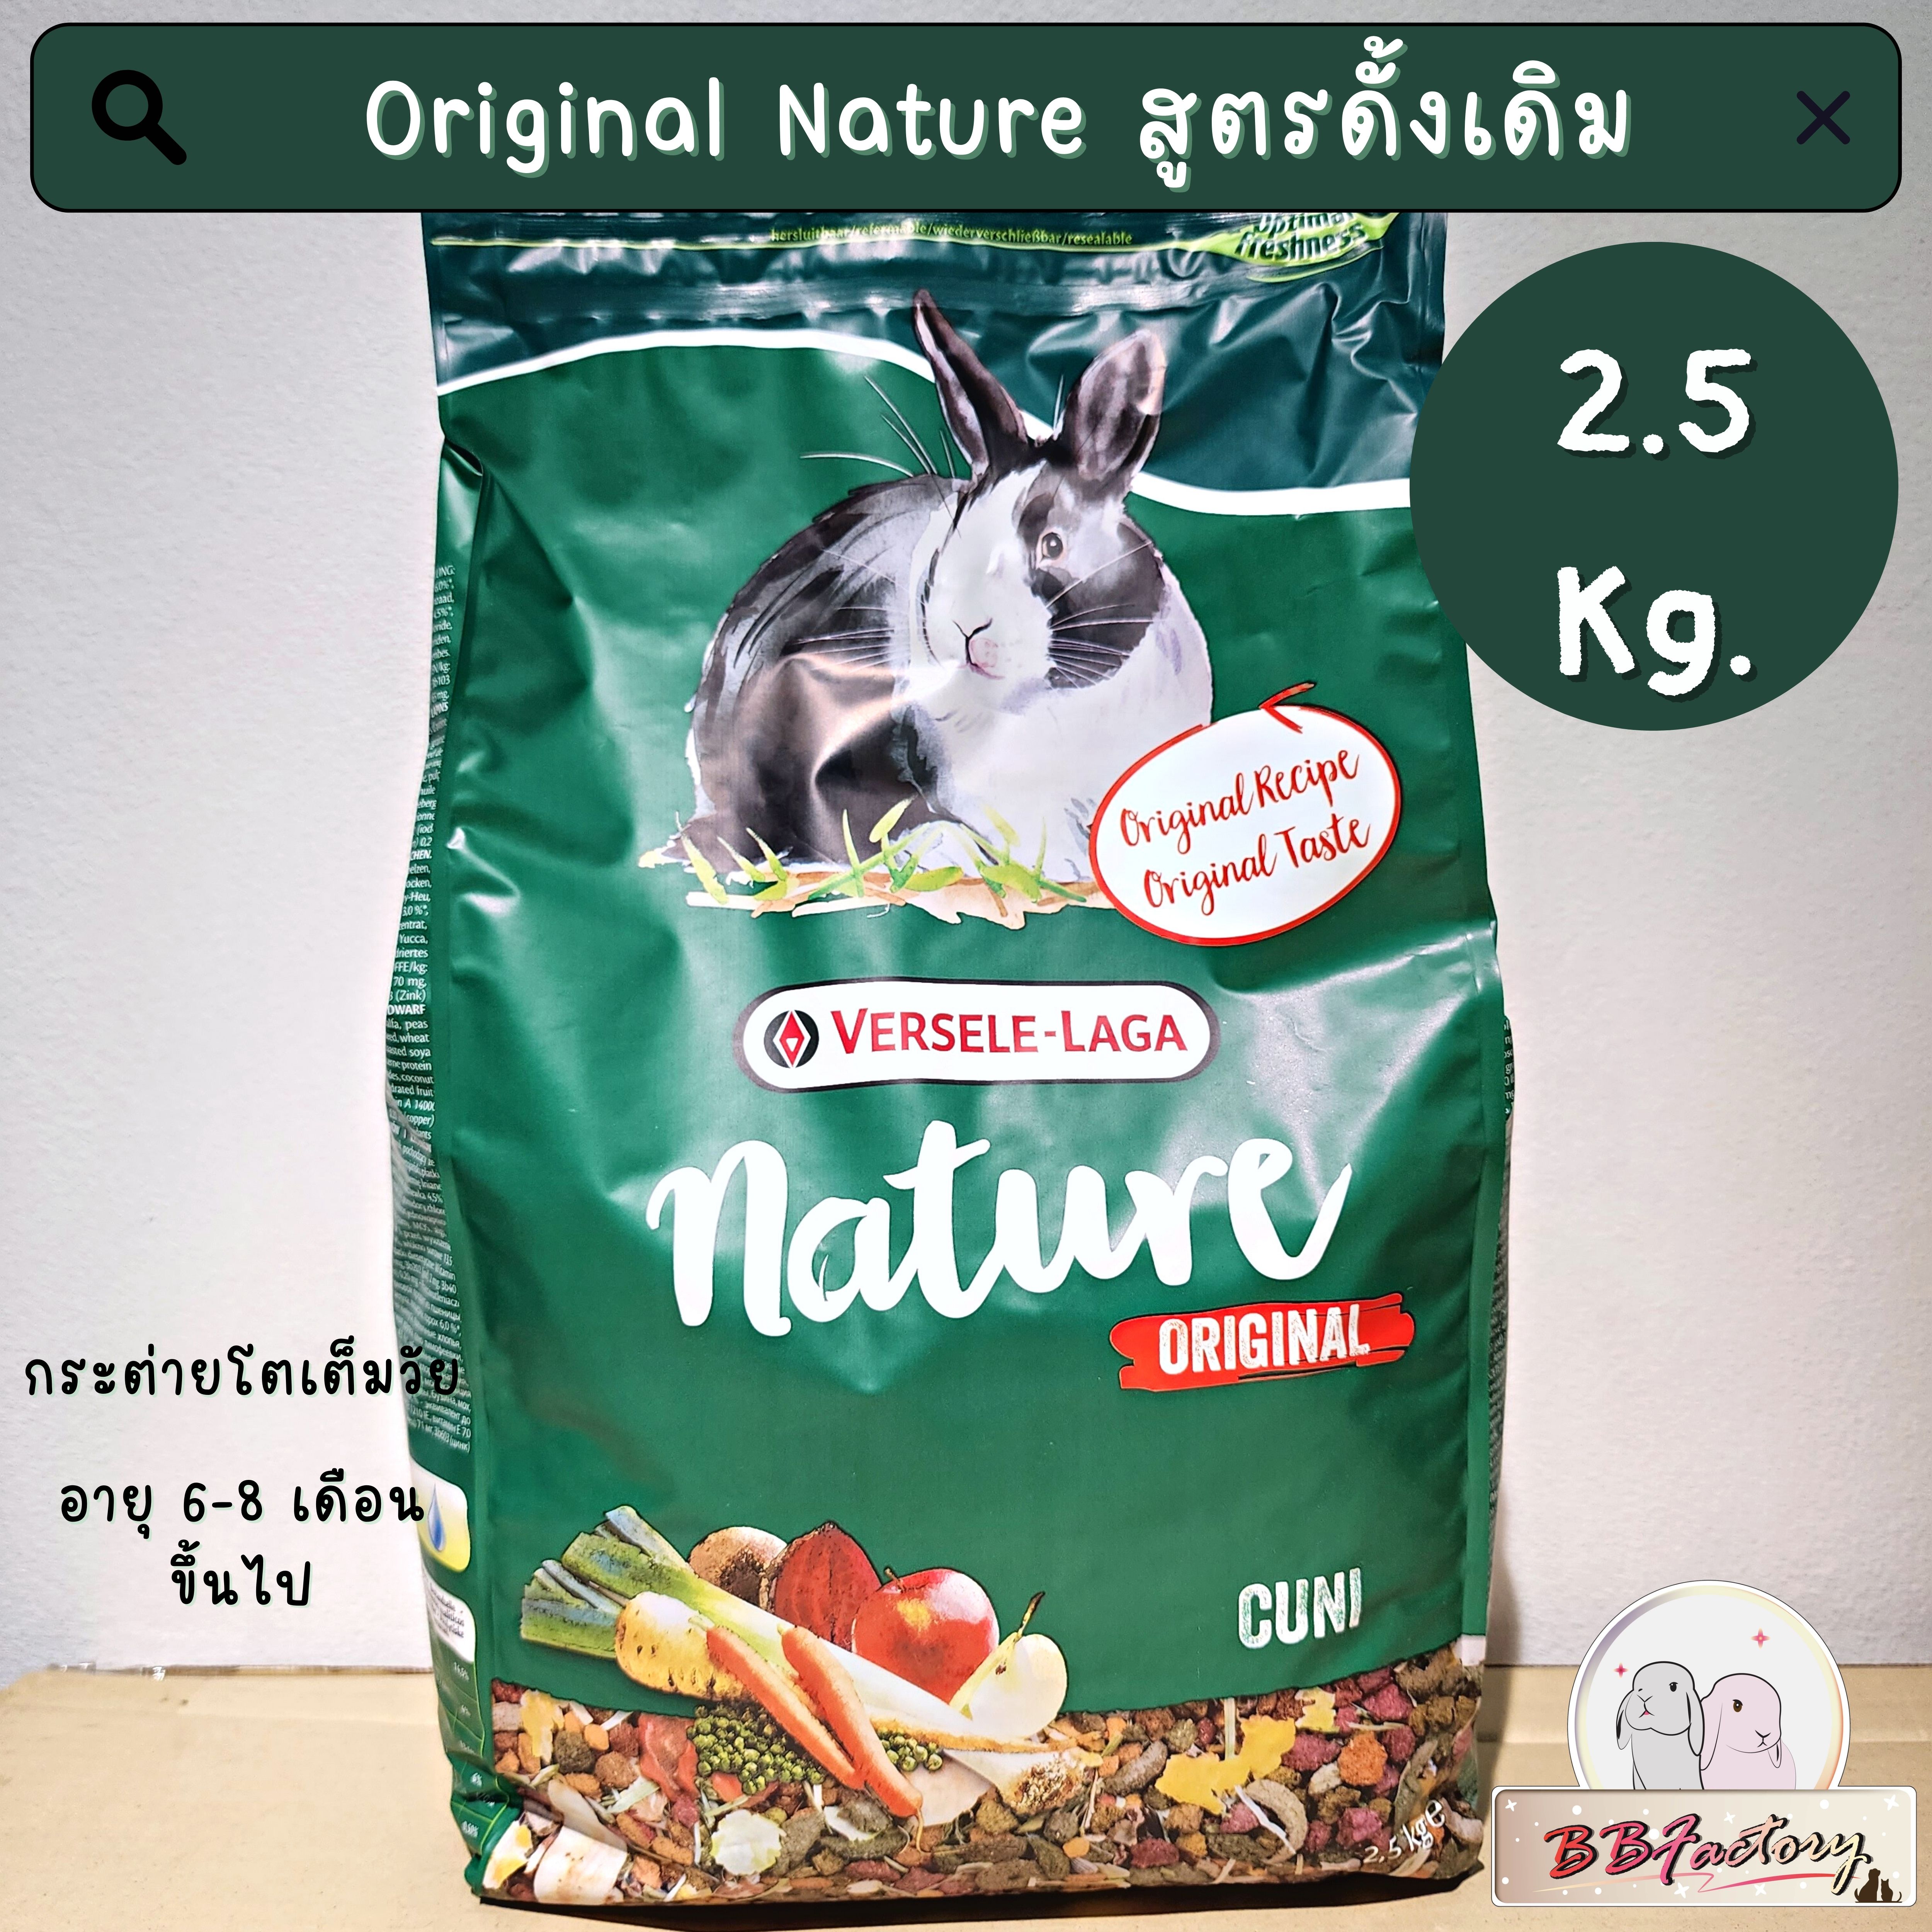 Cuni อาหารกระต่าย คูนิ complete Nature Fiber food กระต่ายเด็ก กระต่ายโต  กระต่ายแก่ แกส ชินชิล่า ขนาด 1-2.5 กิโลกรัม